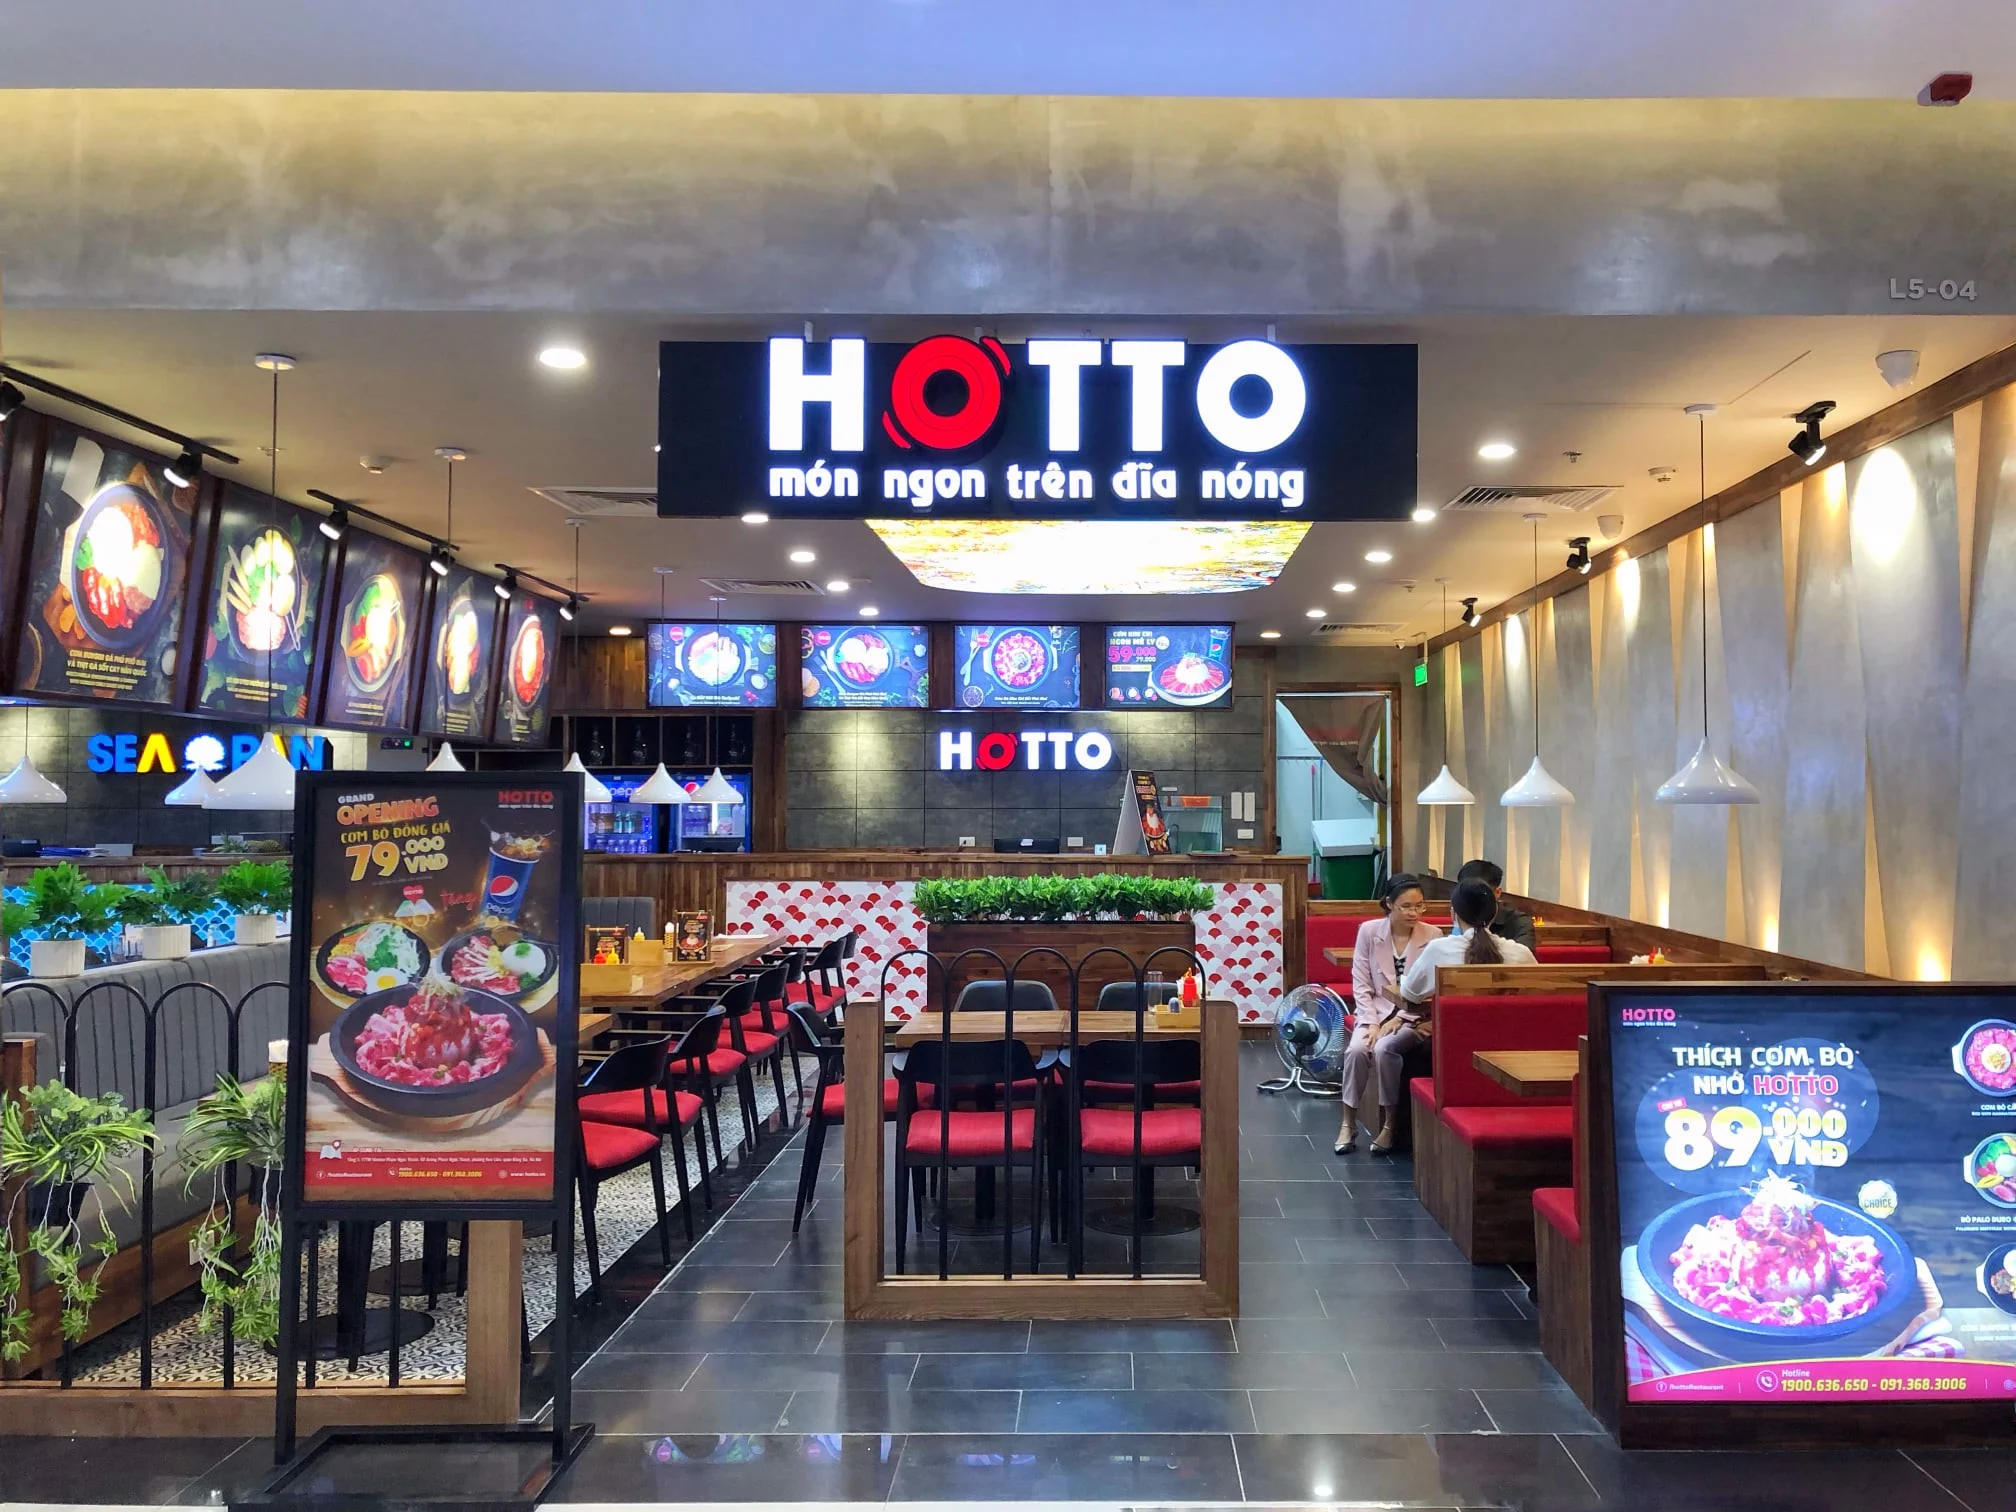 Không gian cửa hàng Hotto với biển hiệu Hotto món ngon trên dĩa nóng